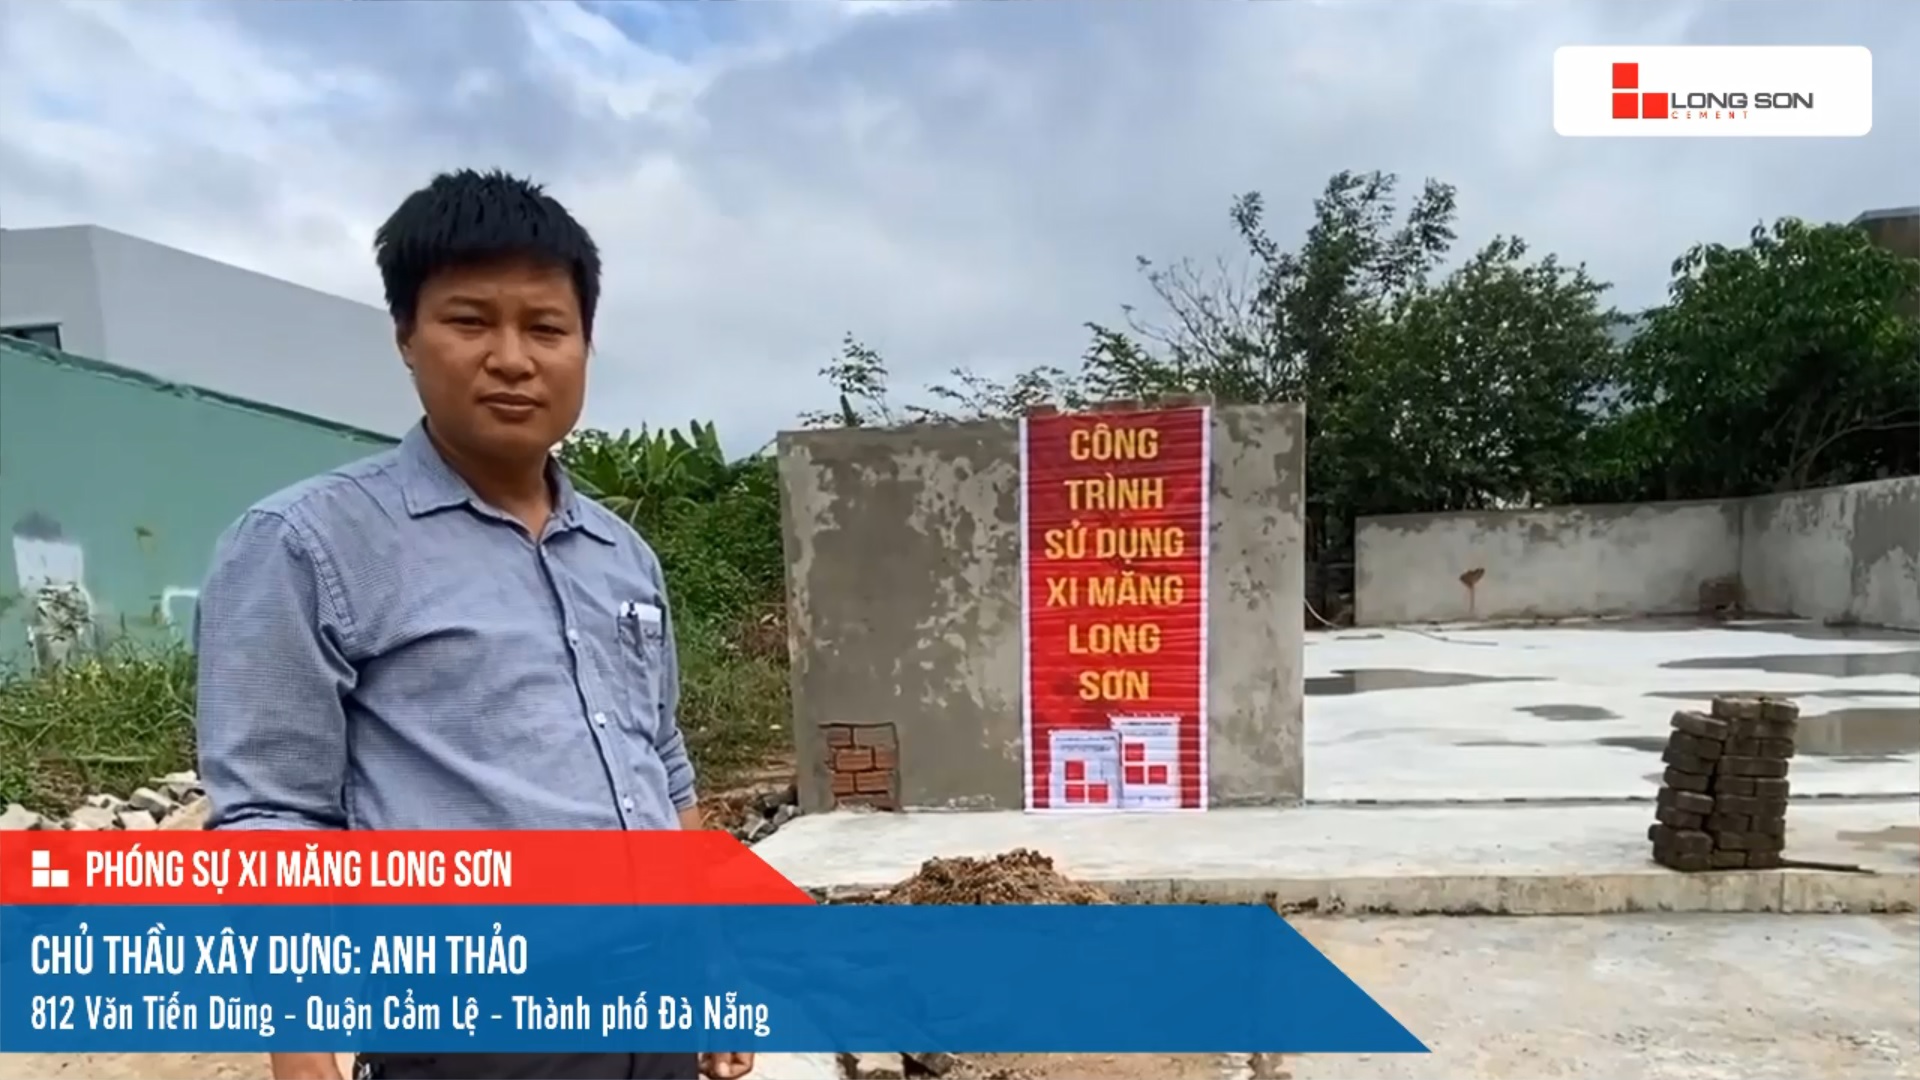 Công trình sử dụng Xi măng Long Sơn tại Đà Nẵng 07.12.2022